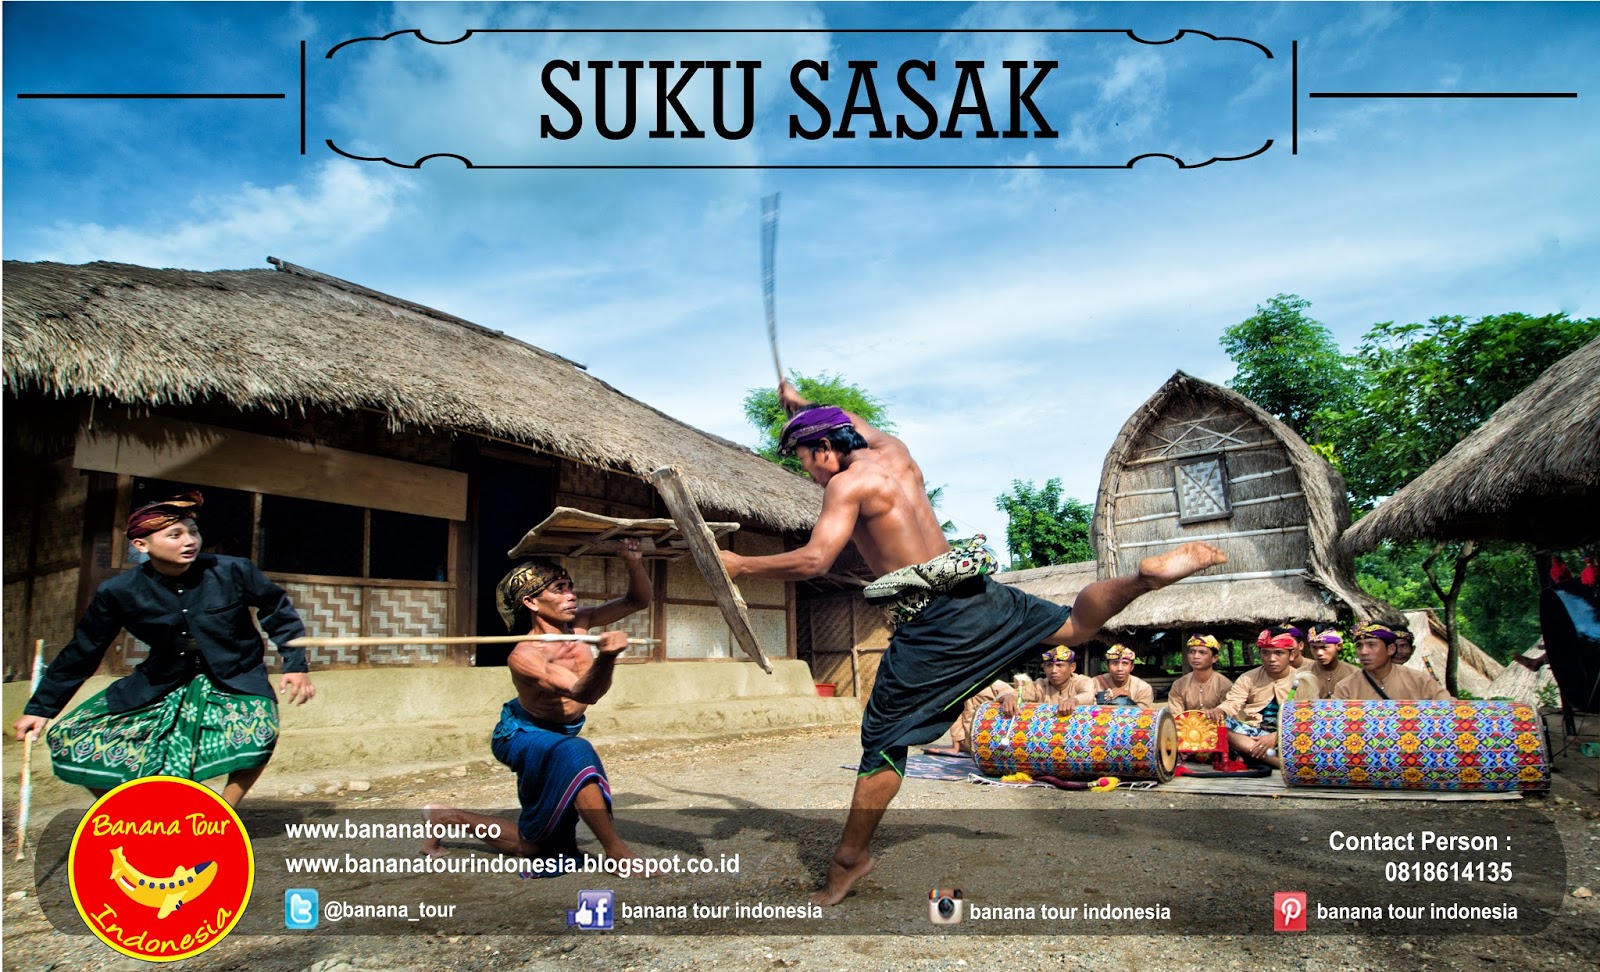 SUKU SASAK ~ Banana Tour Indonesia